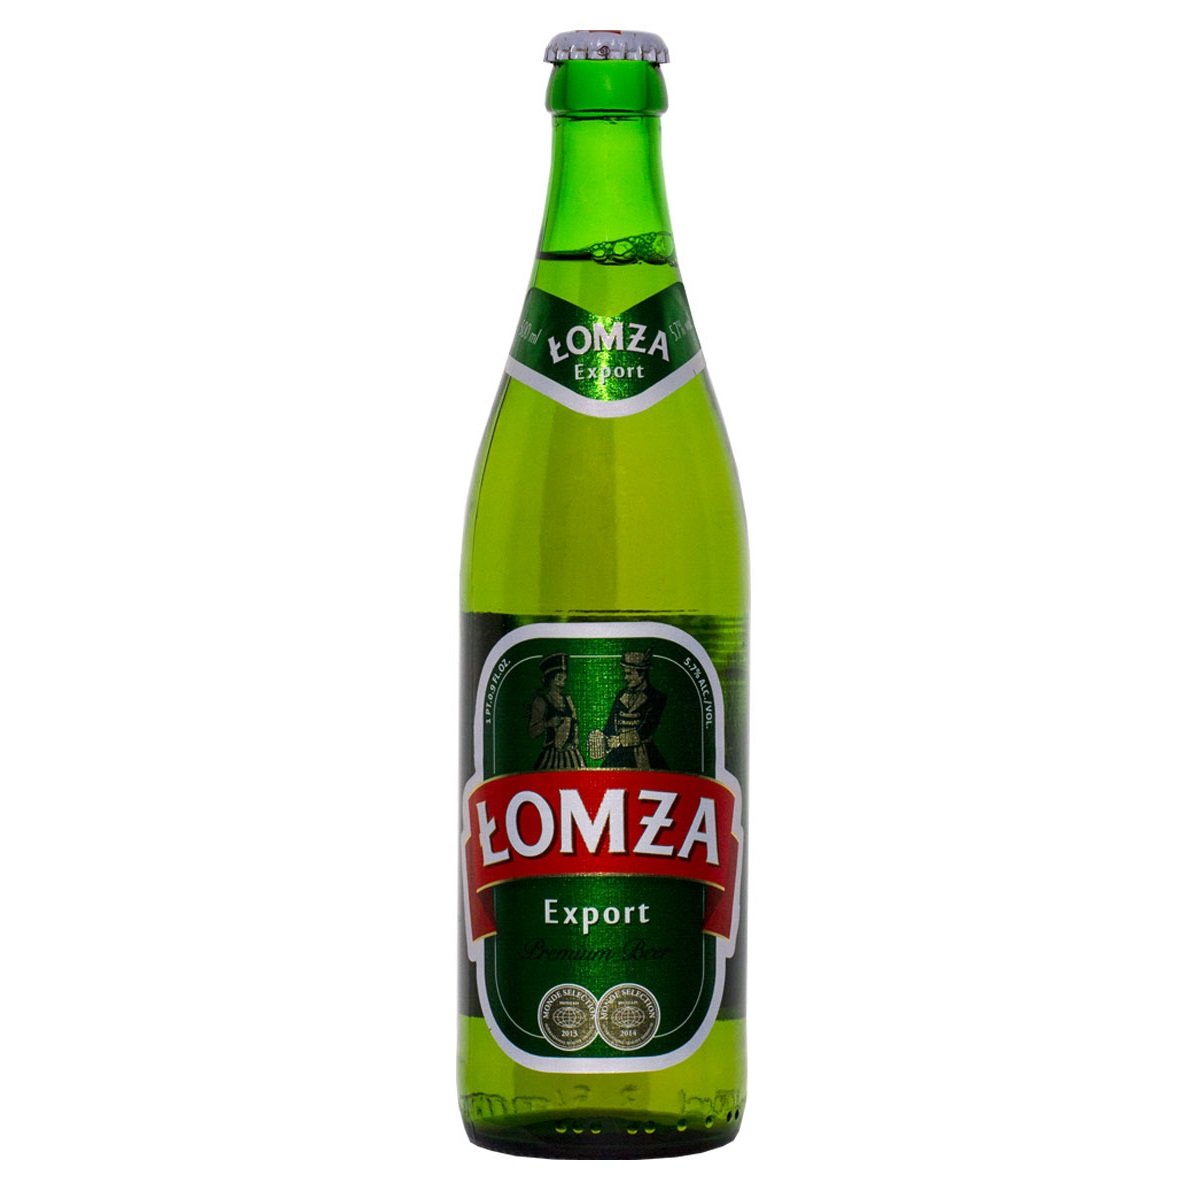 lomza-wyborowe-bottles-16oz-1ct-beercastleny